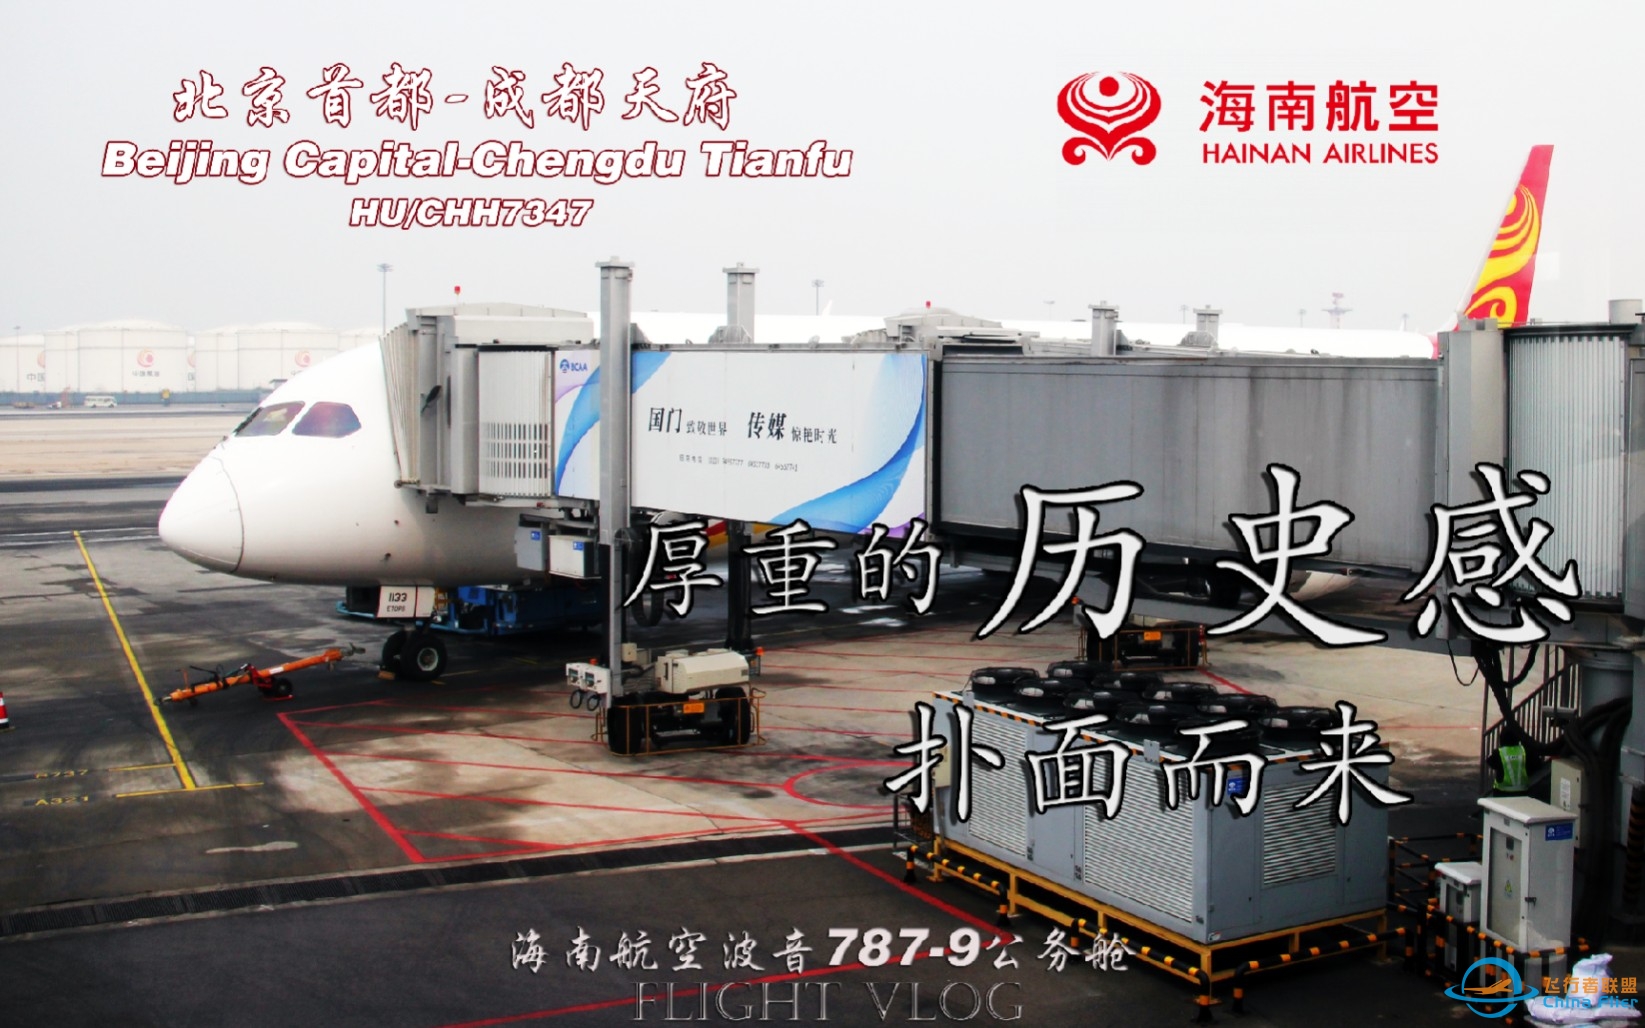 【航空Vlog】 仿佛回到了十年前！北京首都-成都天府 海南航空B787-9公务舱飞行体验-7264 